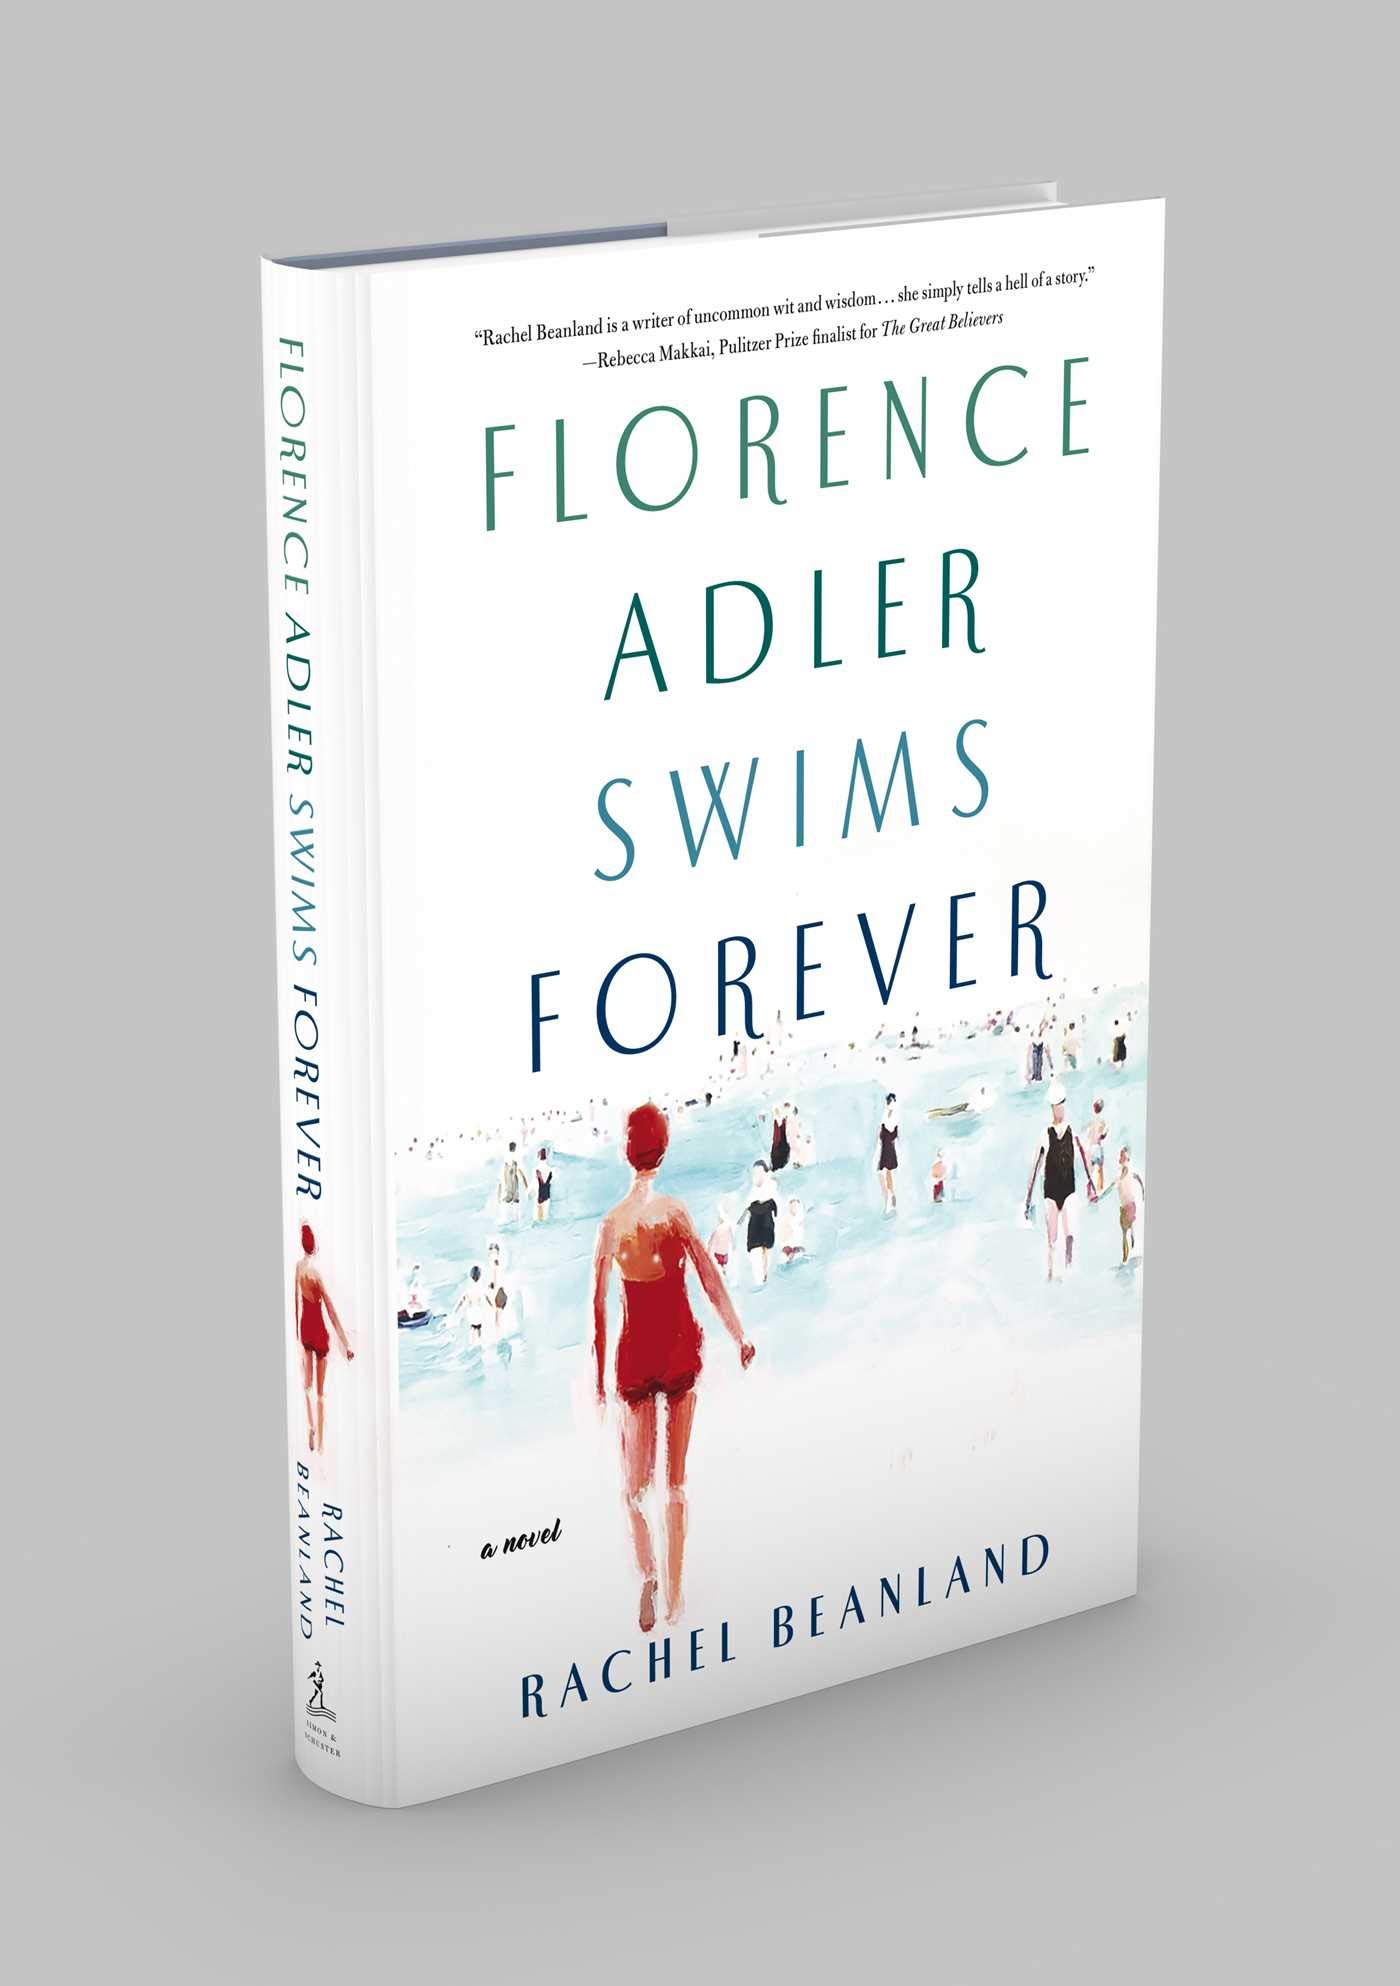 Florence Adler Swims Forever by Rachel Beanland image